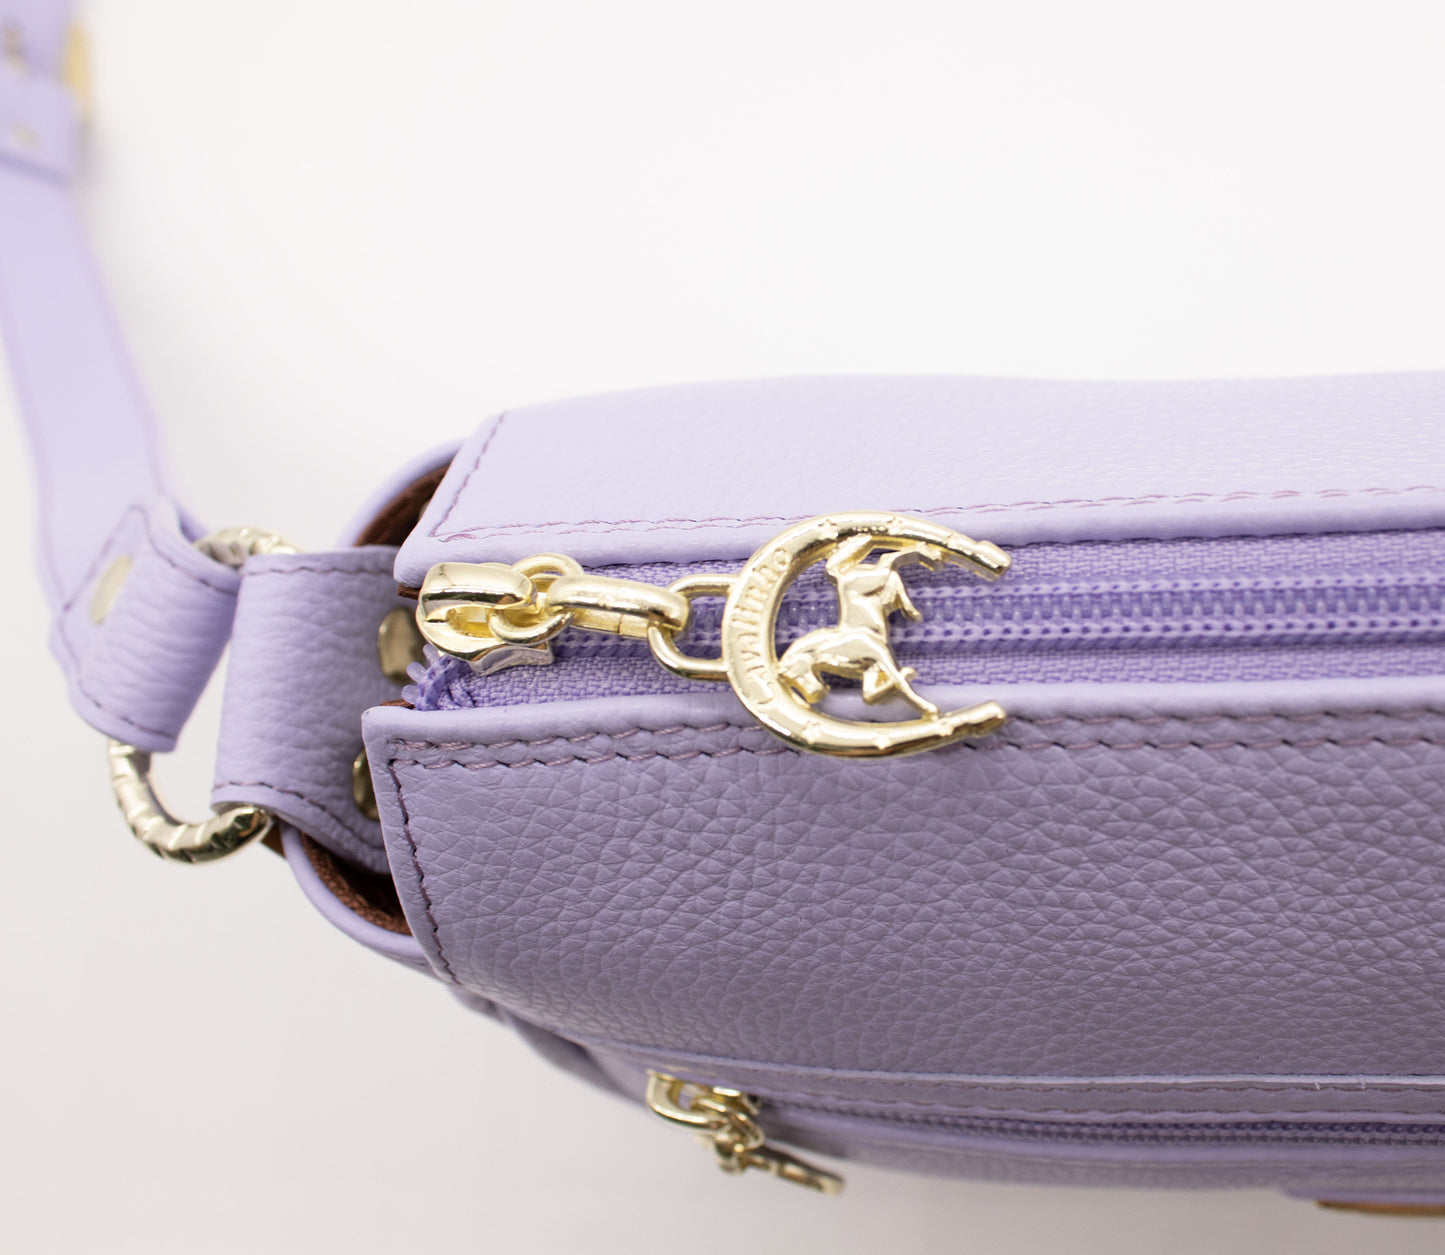 #color_ Lilac | Cavalinho Muse Leather Crossbody Bag - Lilac - 18300373.39.99_4